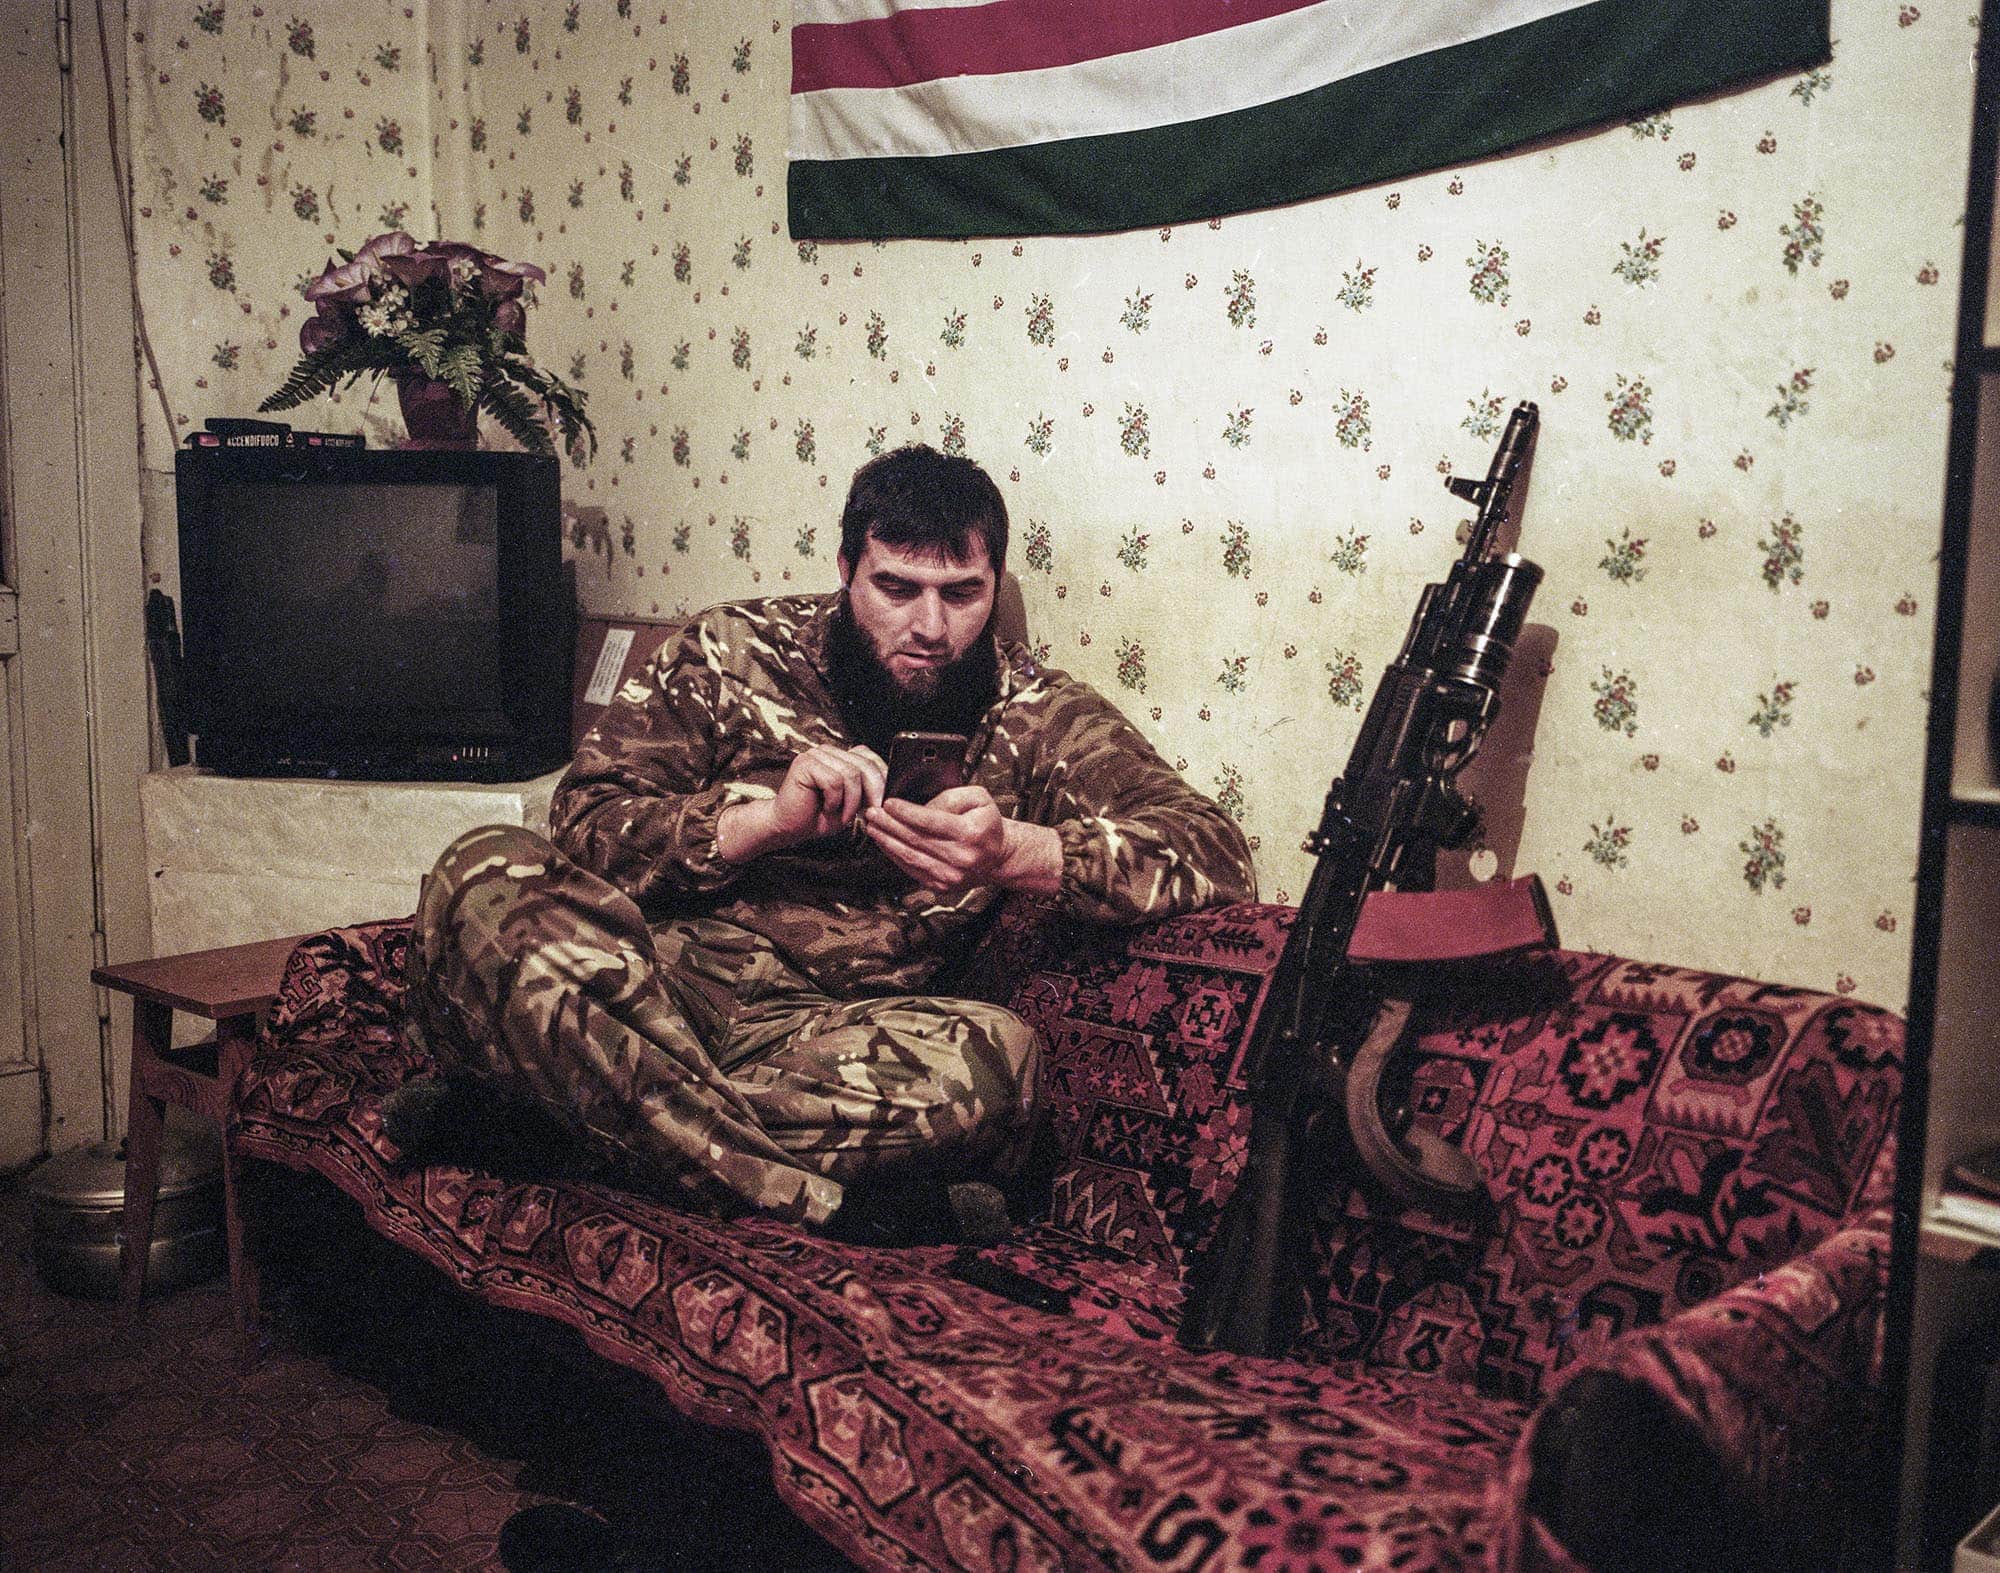 מתוך &quot;Anti-Terrorist Operation Zone: צילומי מלחמה מאוקראינה&quot; של פבל וולברג, 22 בנובמבר עד 22 בינואר בגלריה לאמנות של ויצו חיפה (צילום: פבל וולברג)